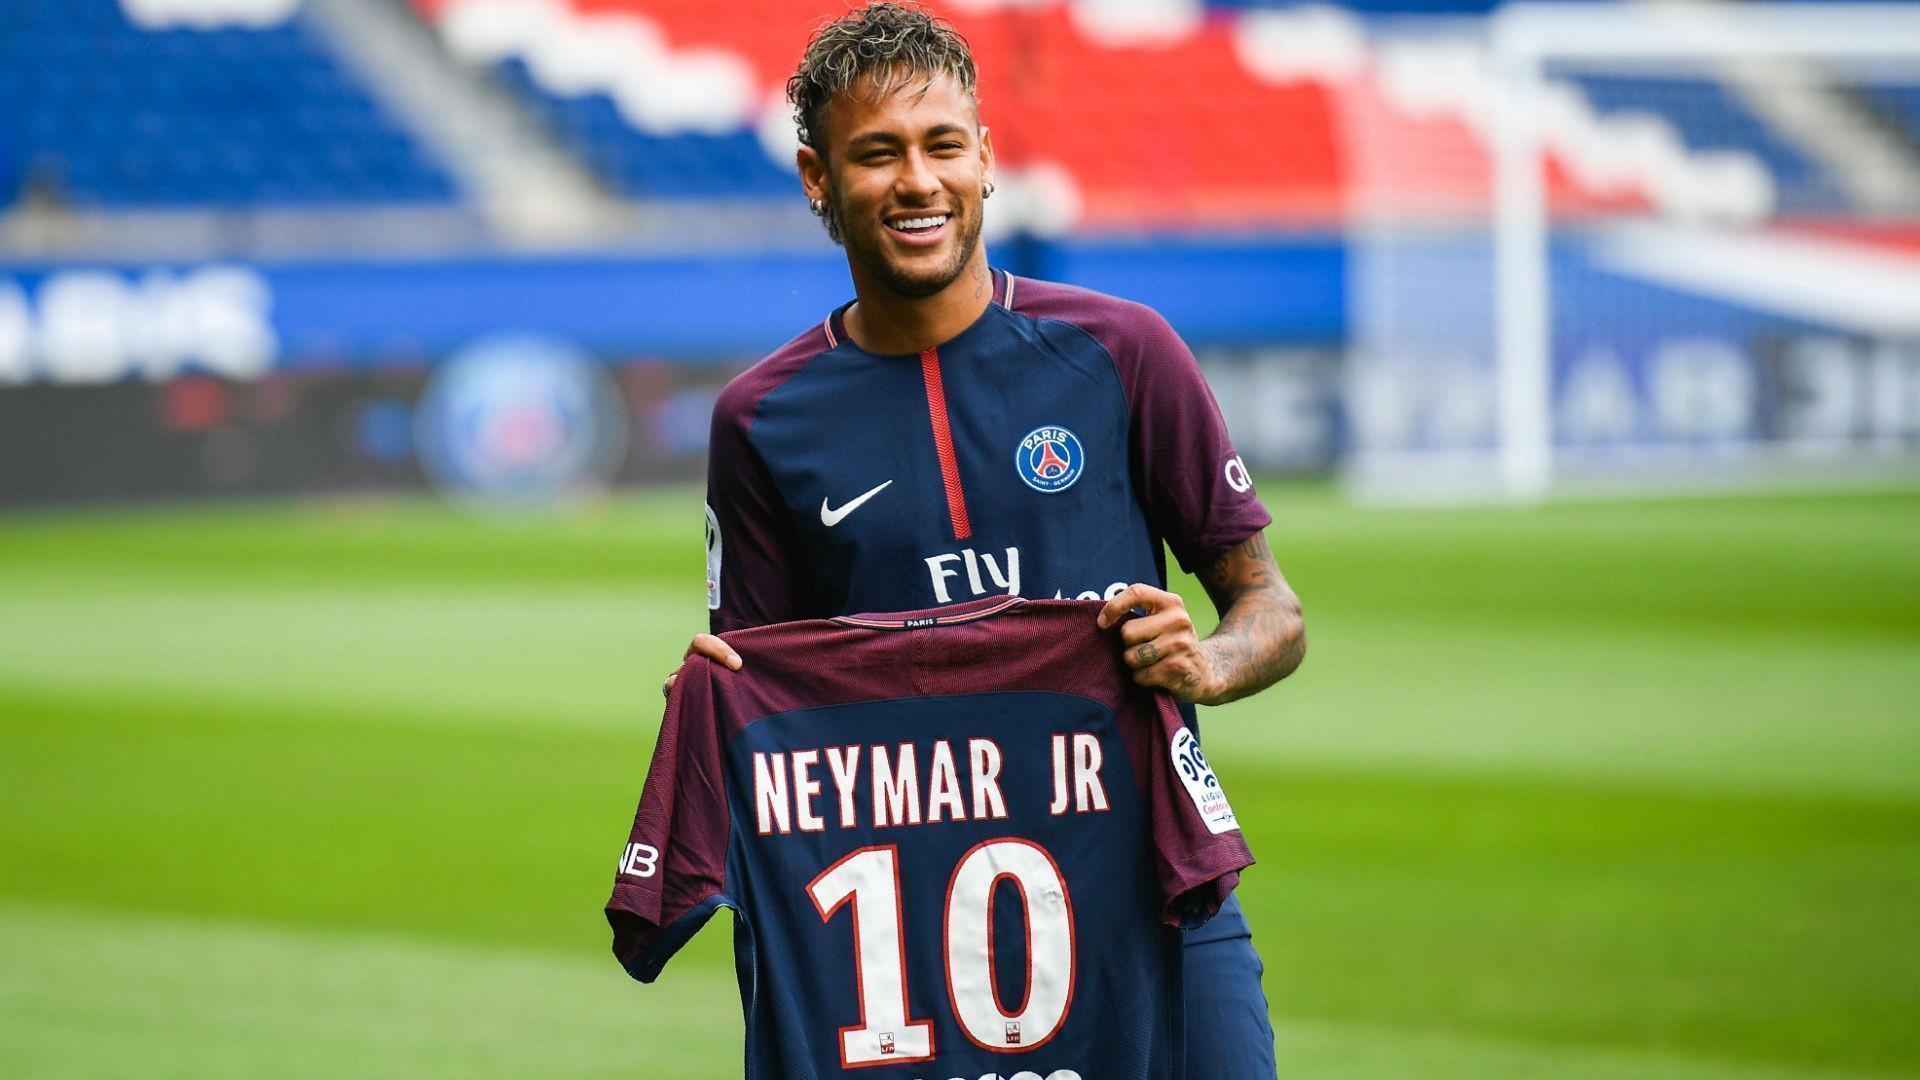 à¸à¸¥à¸à¸²à¸£à¸à¹à¸à¸«à¸²à¸£à¸¹à¸à¸ à¸²à¸à¸ªà¸³à¸«à¸£à¸±à¸ Neymar Jr psg HD